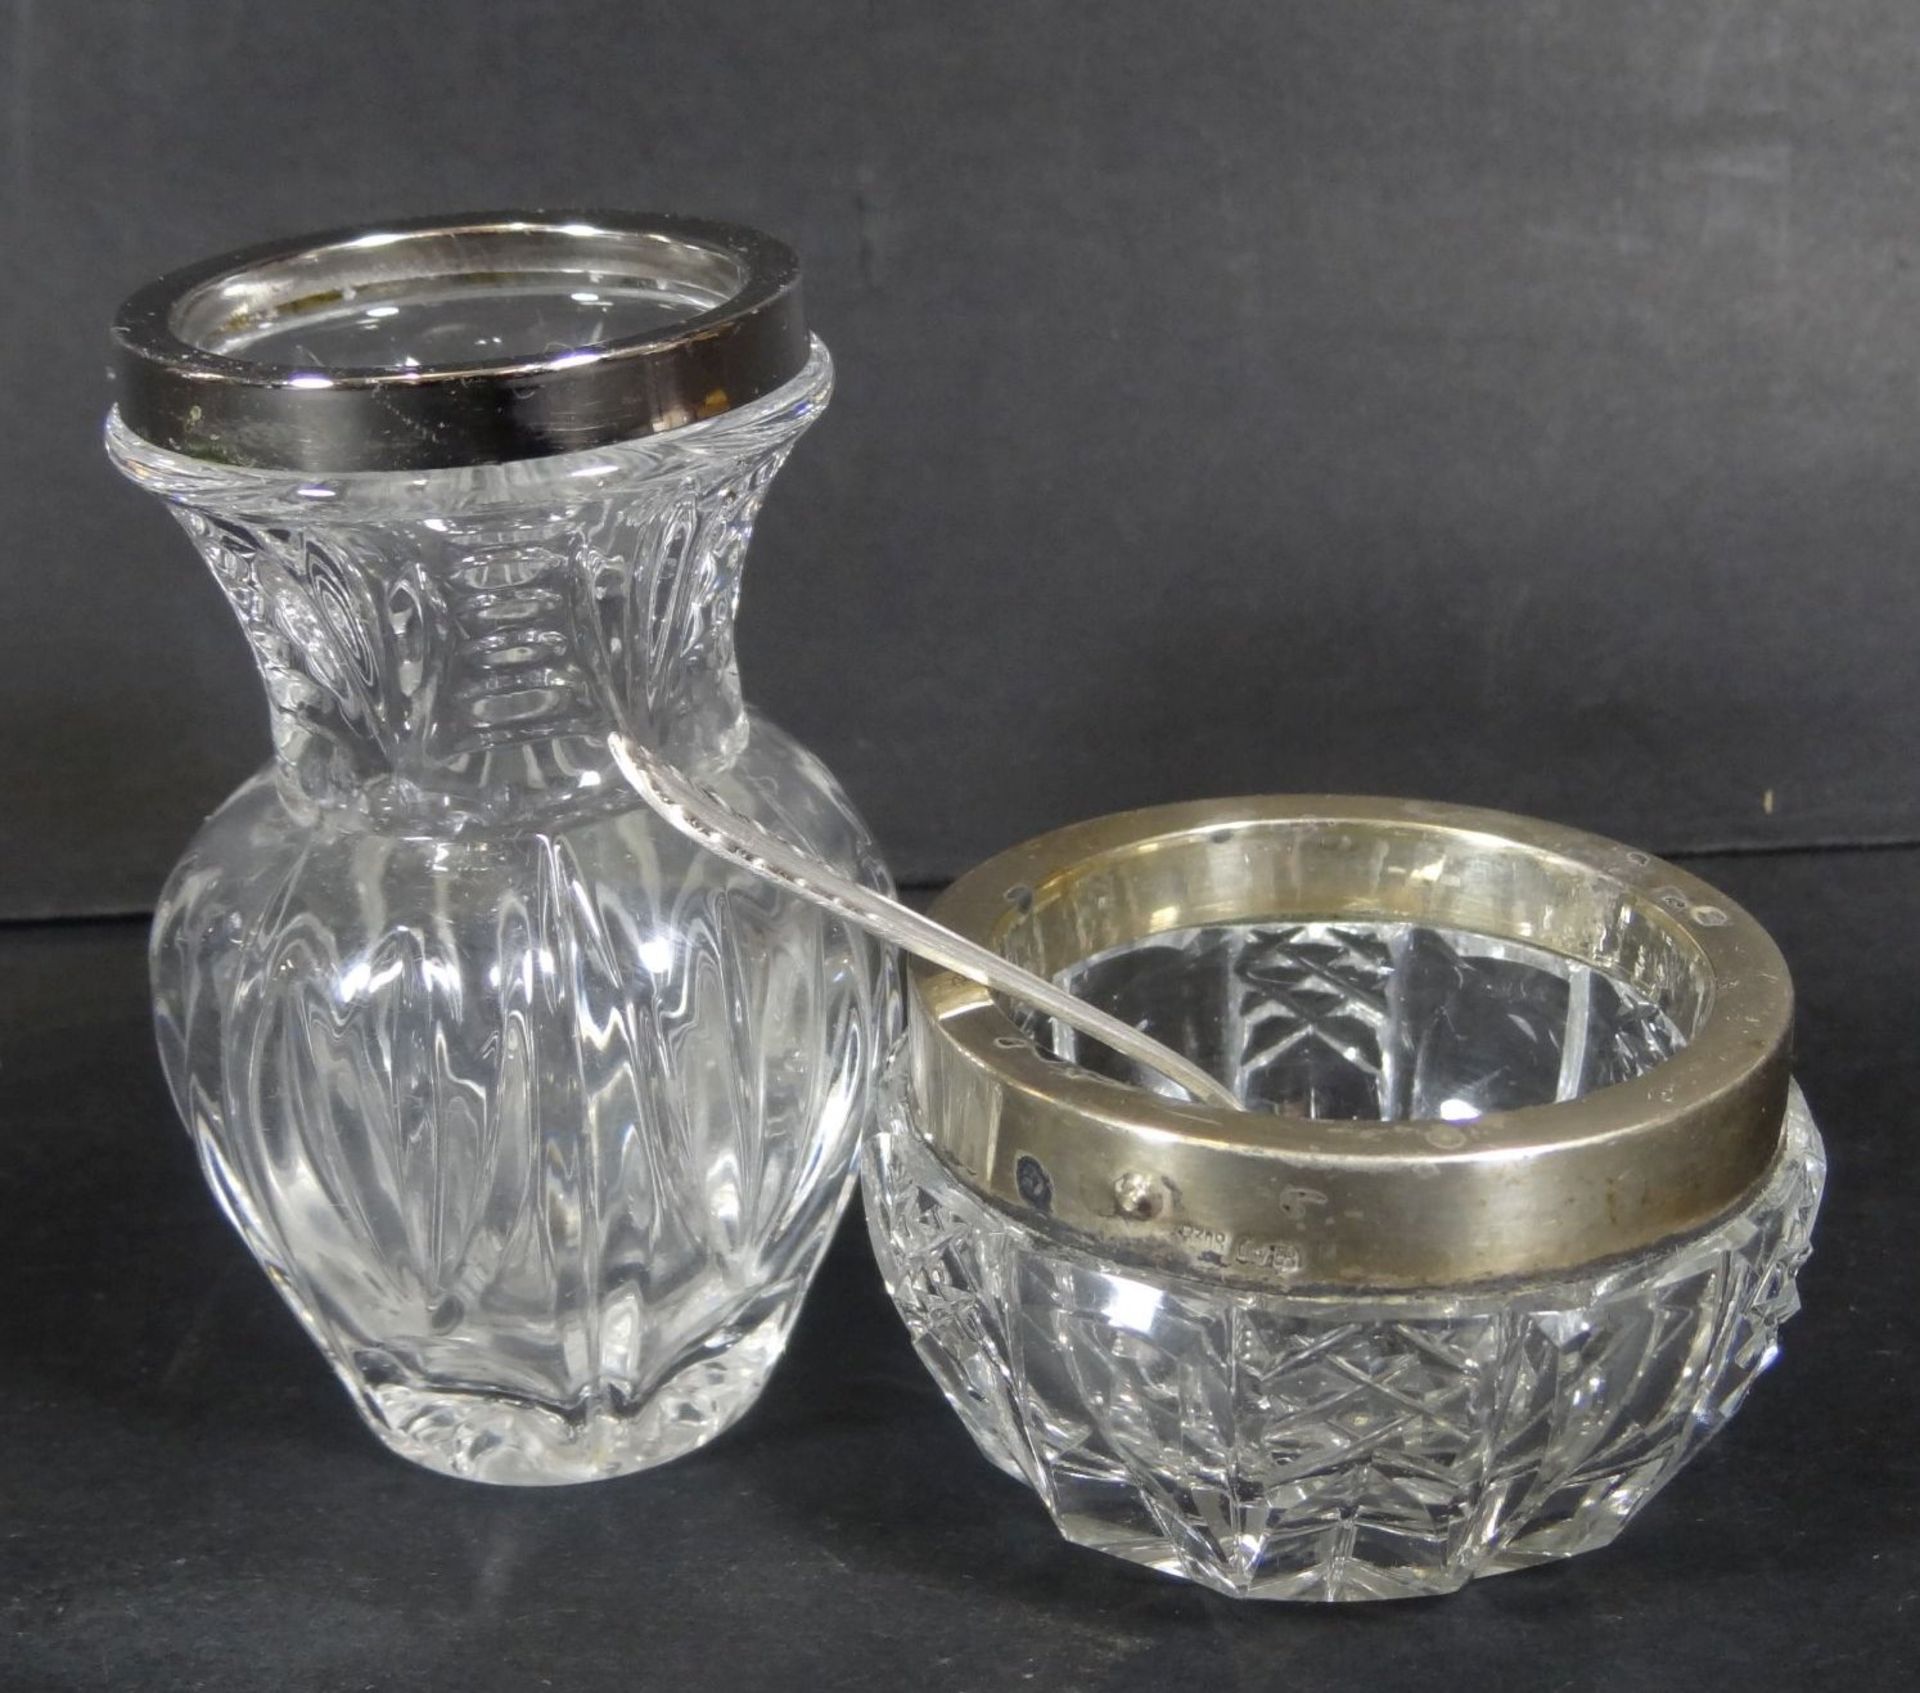 kl. Gewürzschälchen mit Silberlöffel, kl. Vase mit Silberrand-800-, H-3.5 und 7,5- - -22.61 %